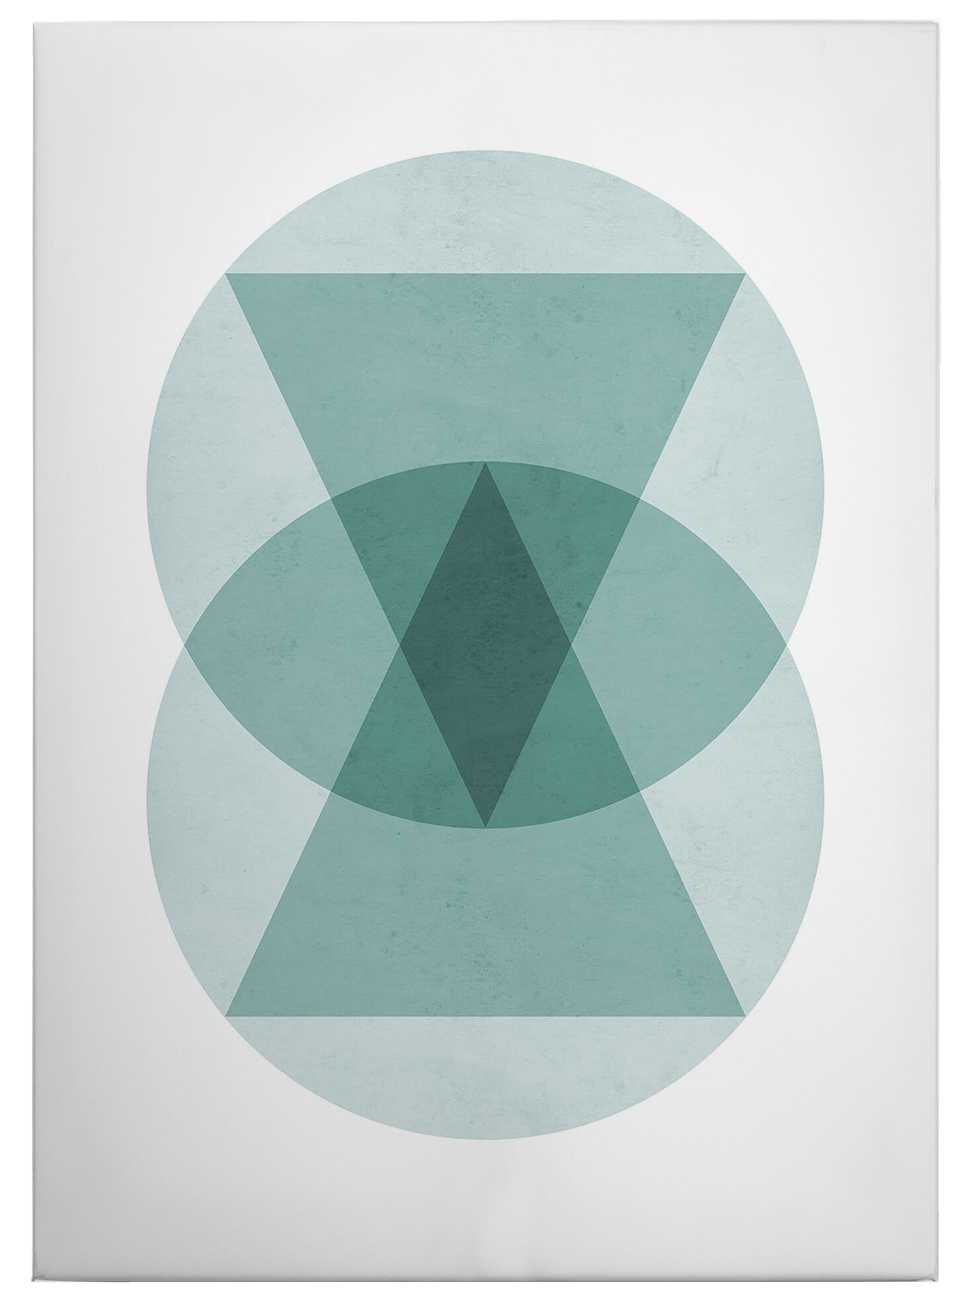             Toile Motif géométrique Cercles Triangles - 0,50 m x 0,70 m
        